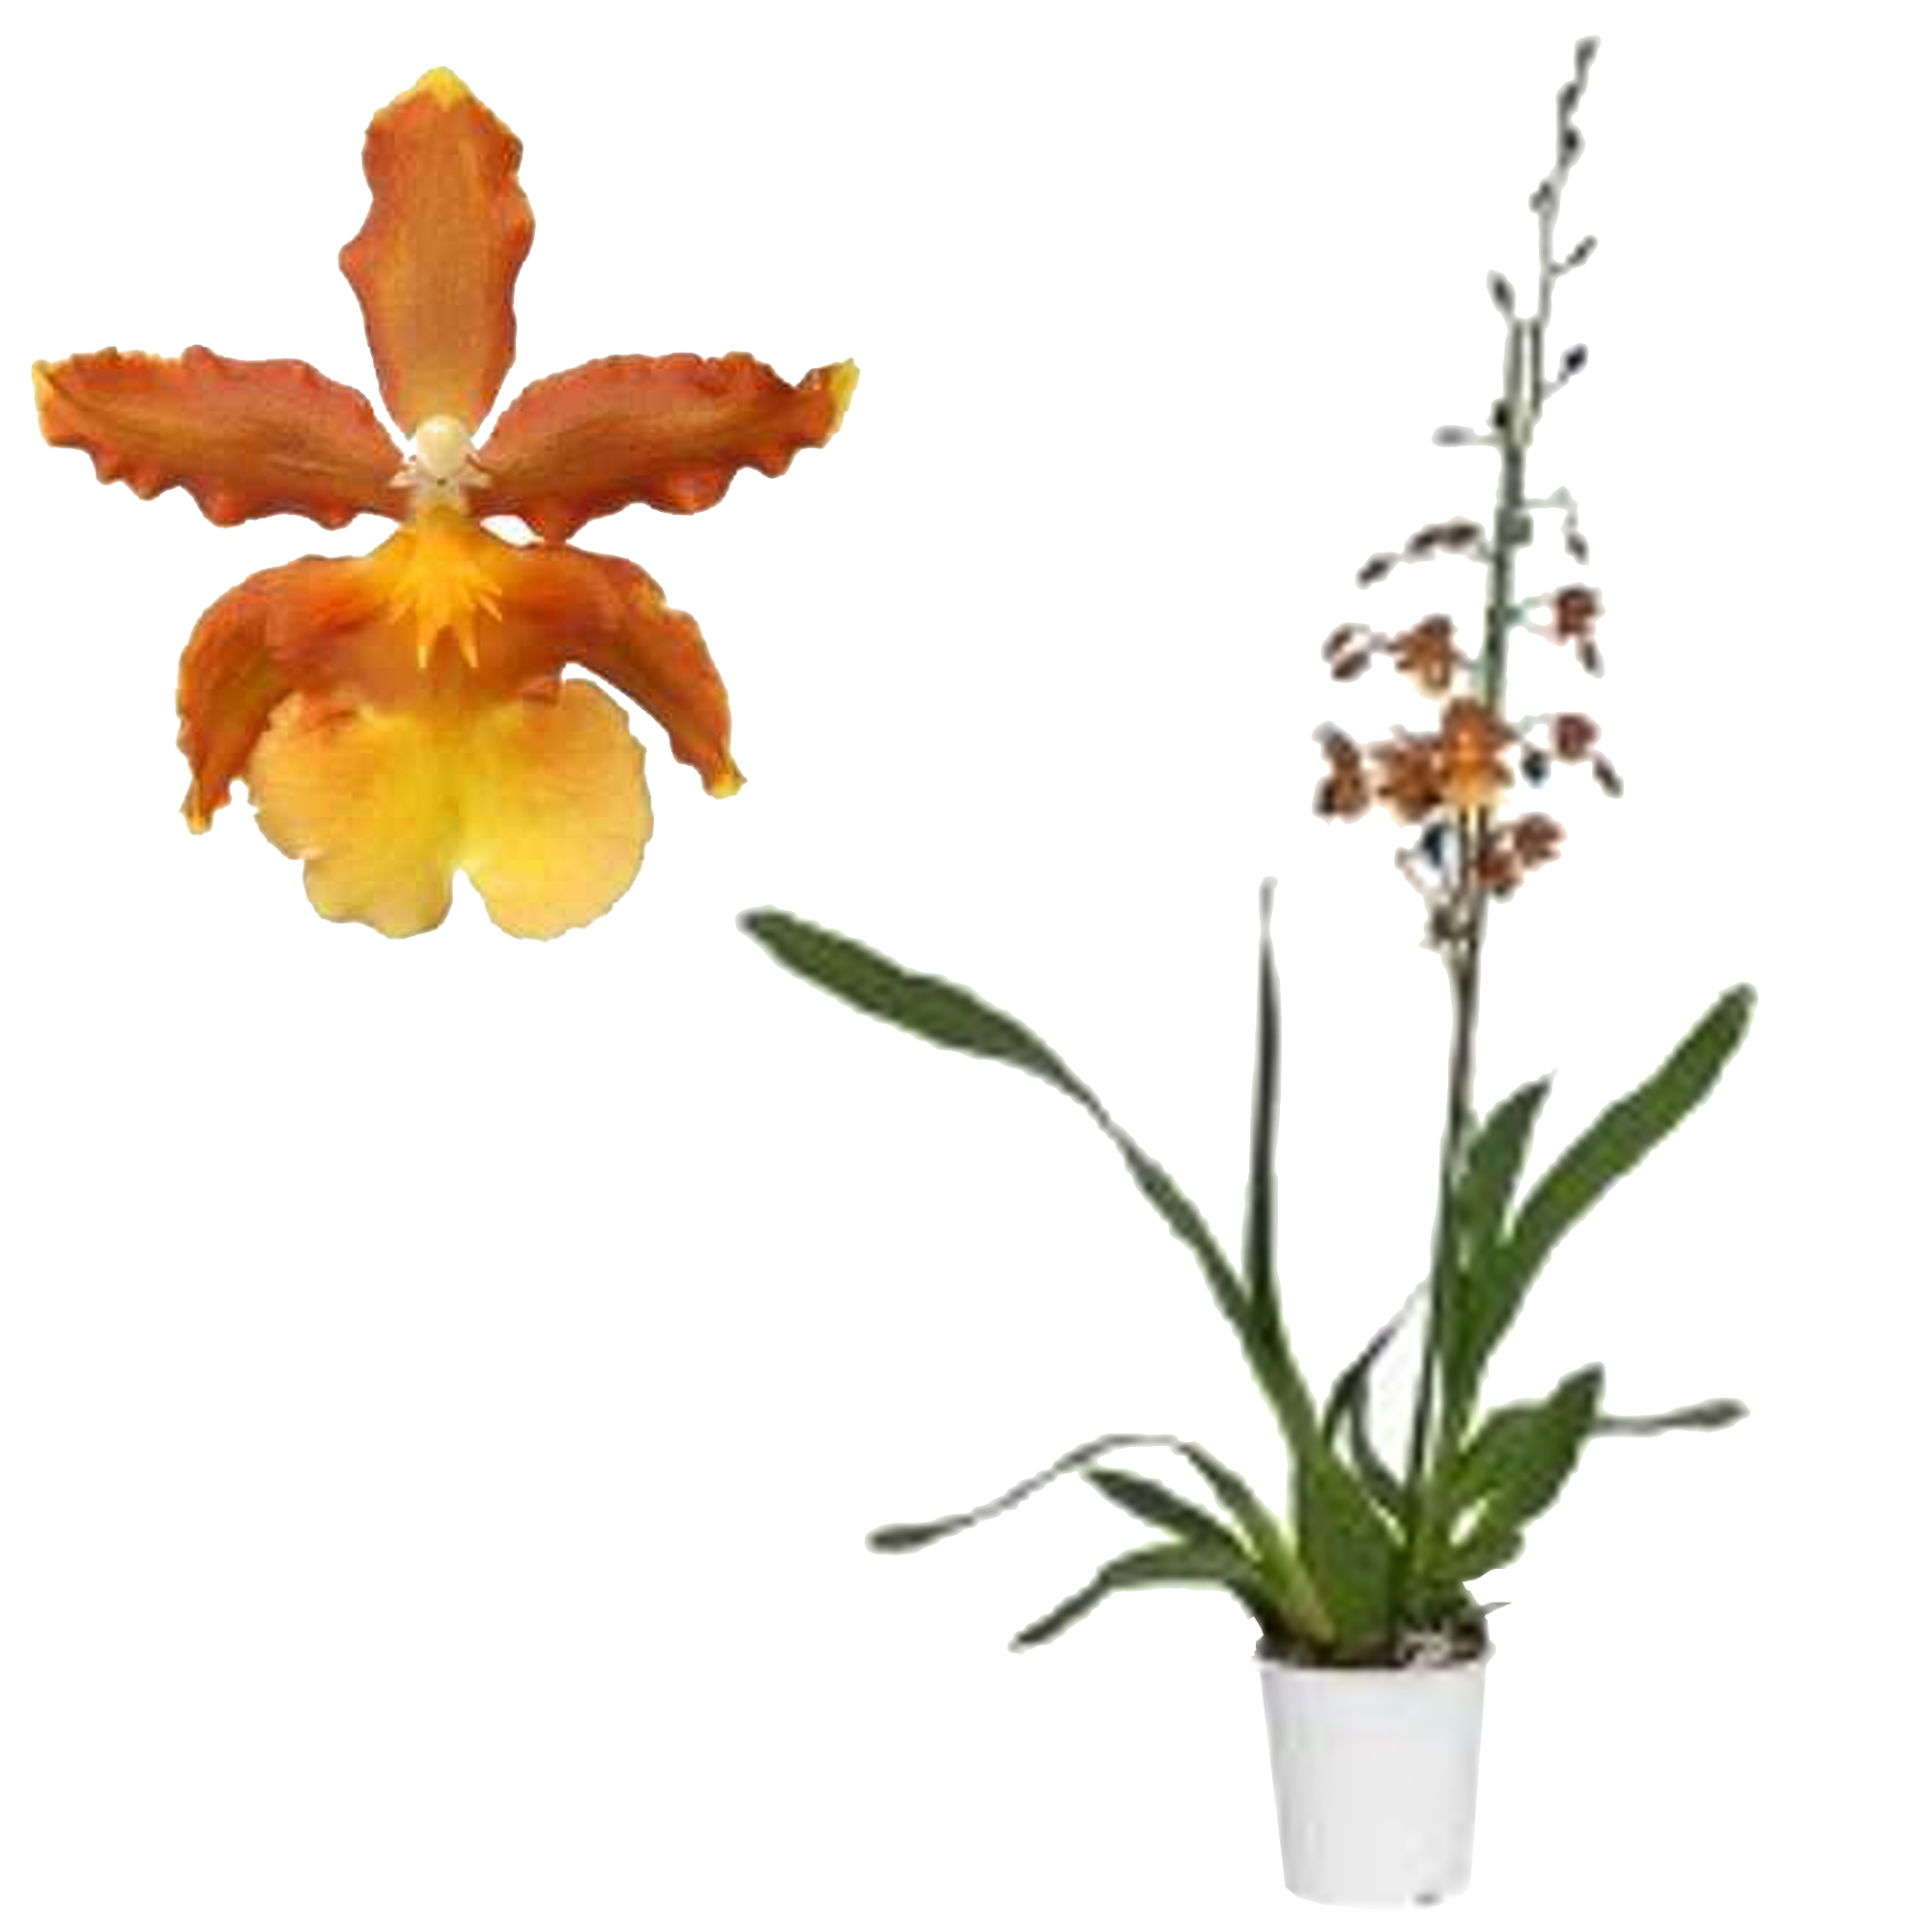 Cambria Orchidee 'Cantate' 1 Rispe orange, 12 cm Topf + product picture